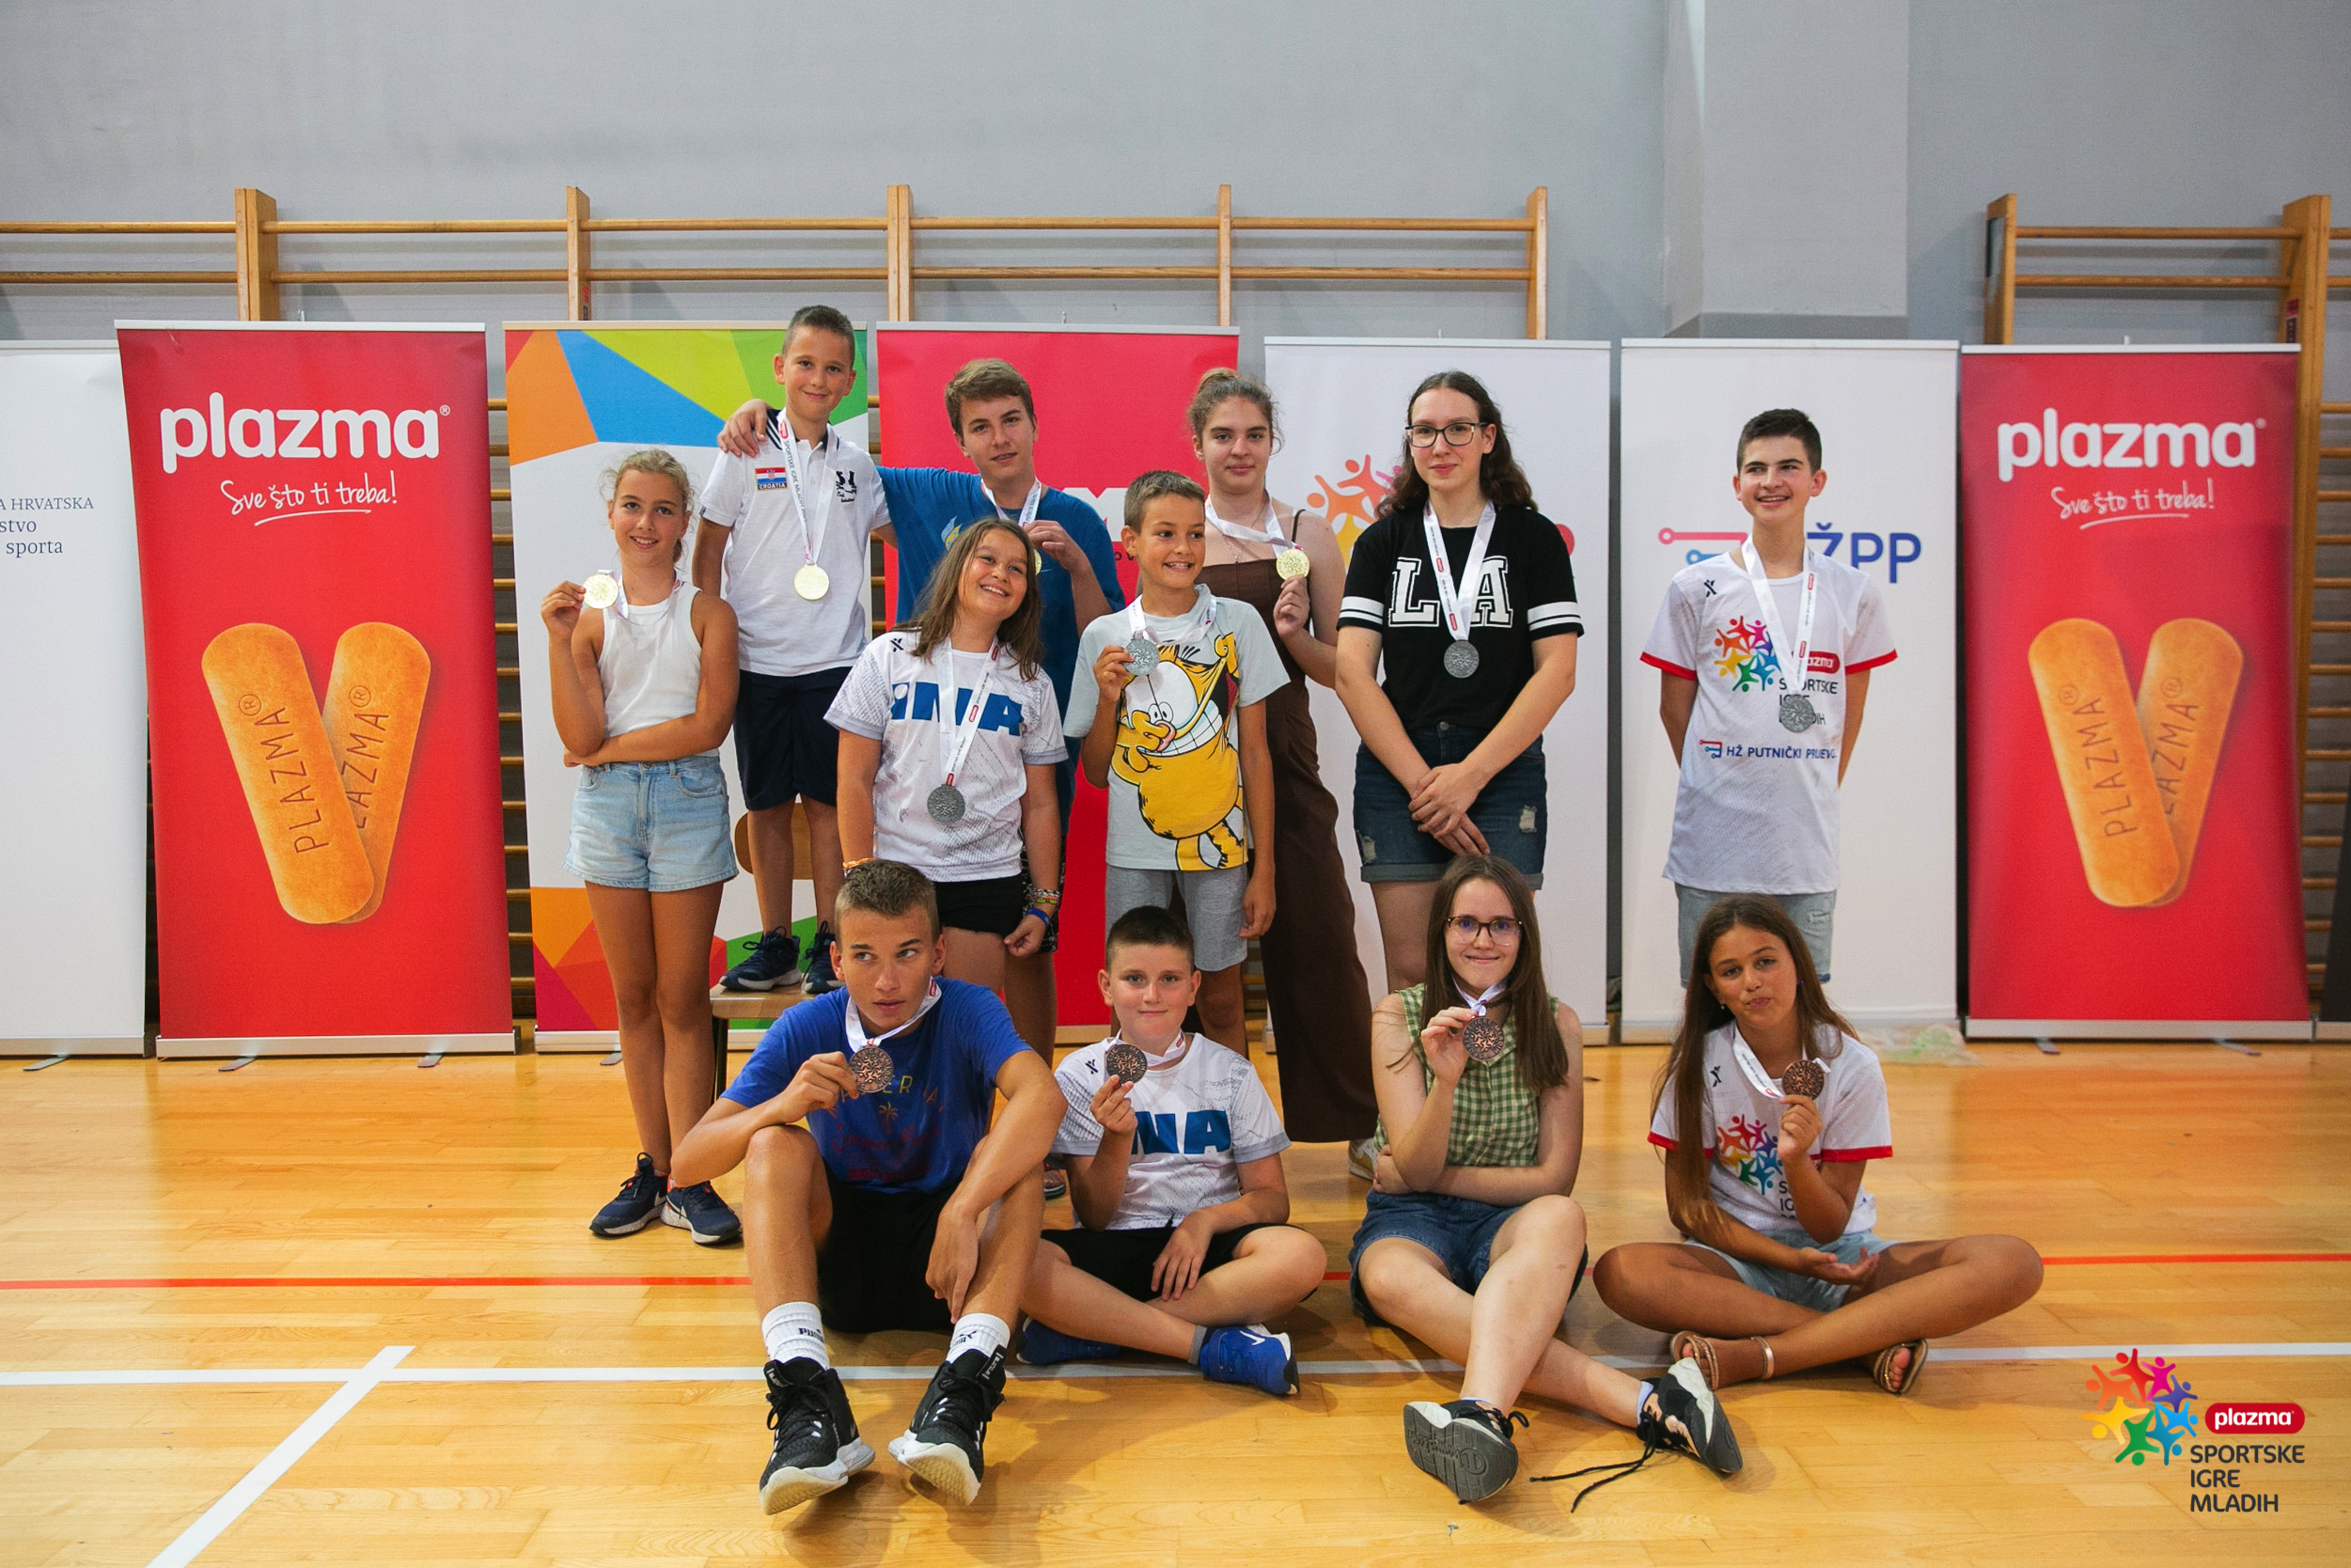 Najbolji mladi šahisti Plazma sportskih igra u Splitu